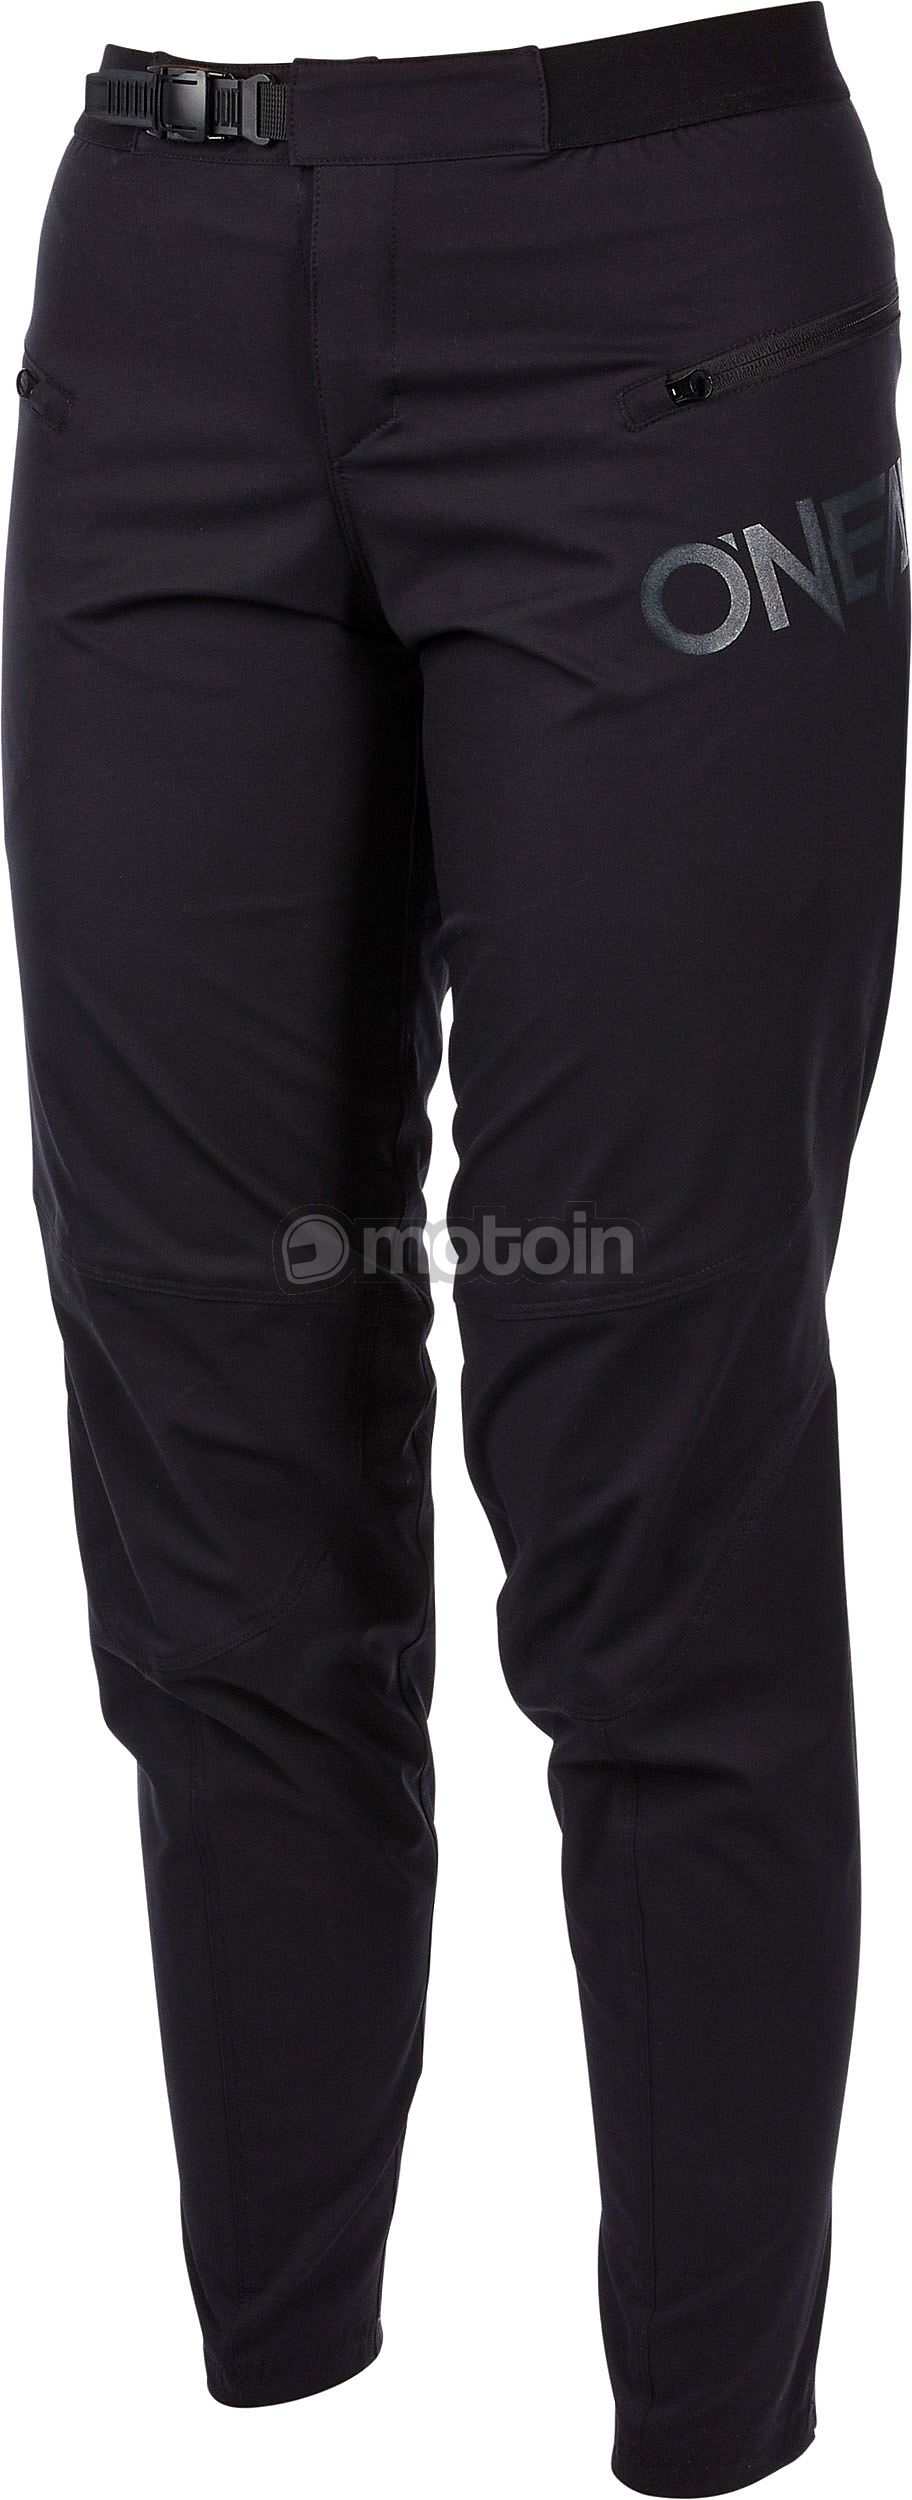 ONeal Trailfinder S23, spodnie tekstylne damskie